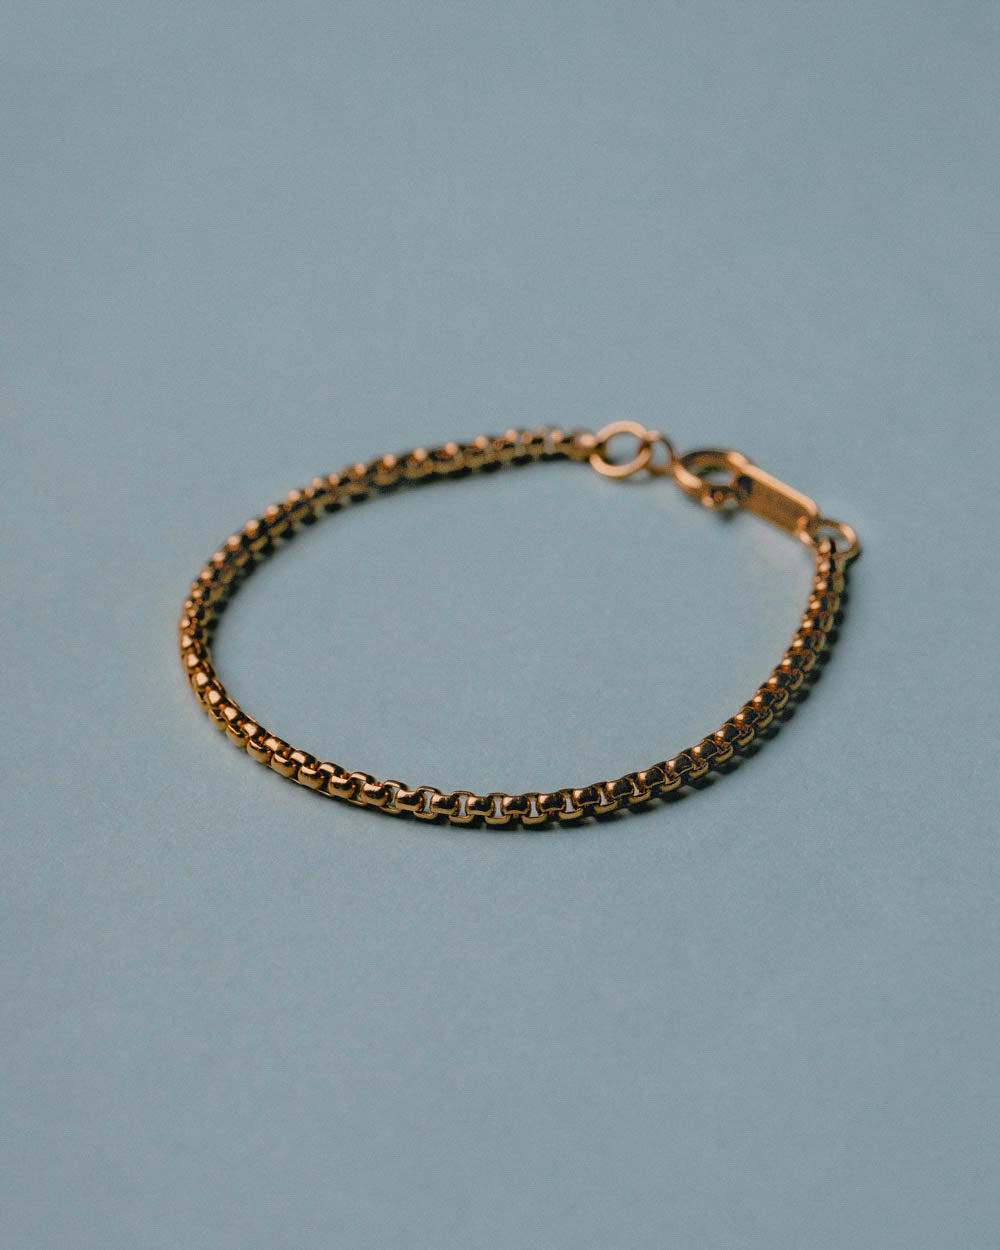 Kauai Bracelet - Golden Stainless Steel Bracelet